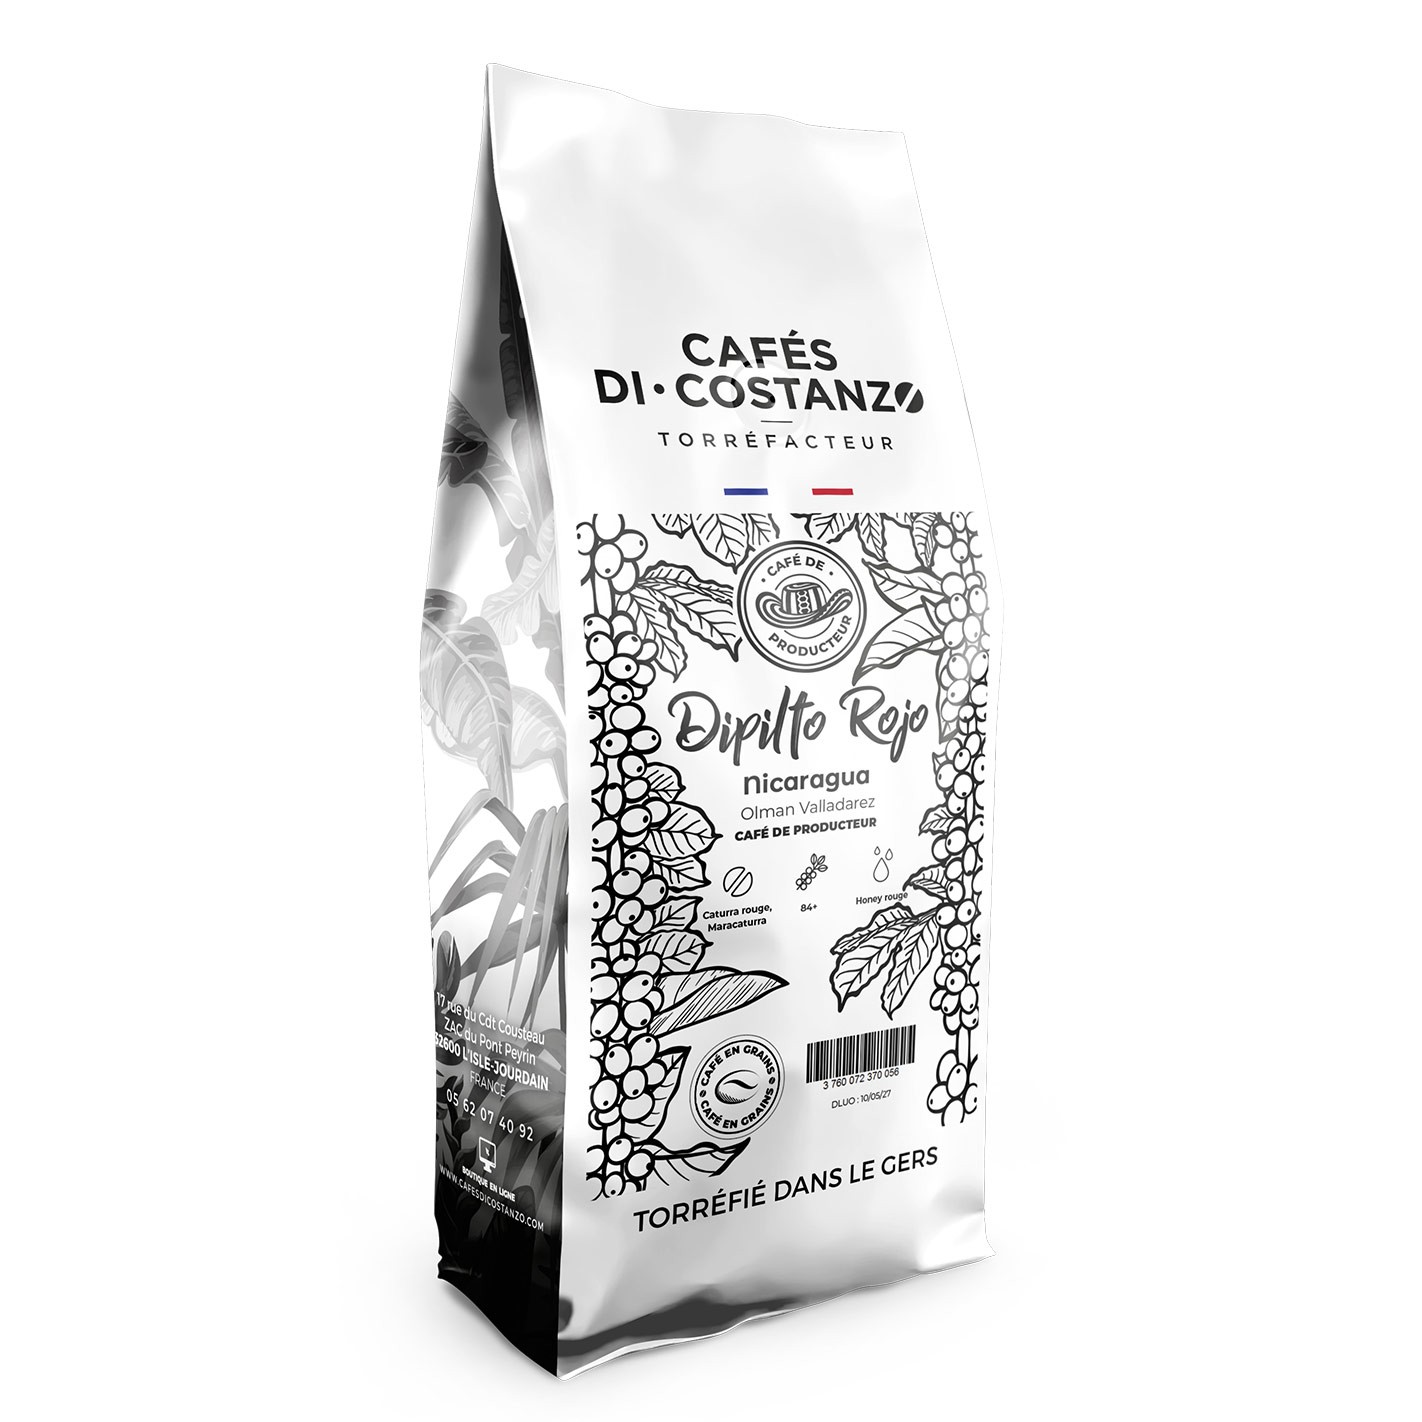 Emballage pour café en grain ou café moulu - Étui 250 gr de café en poudre